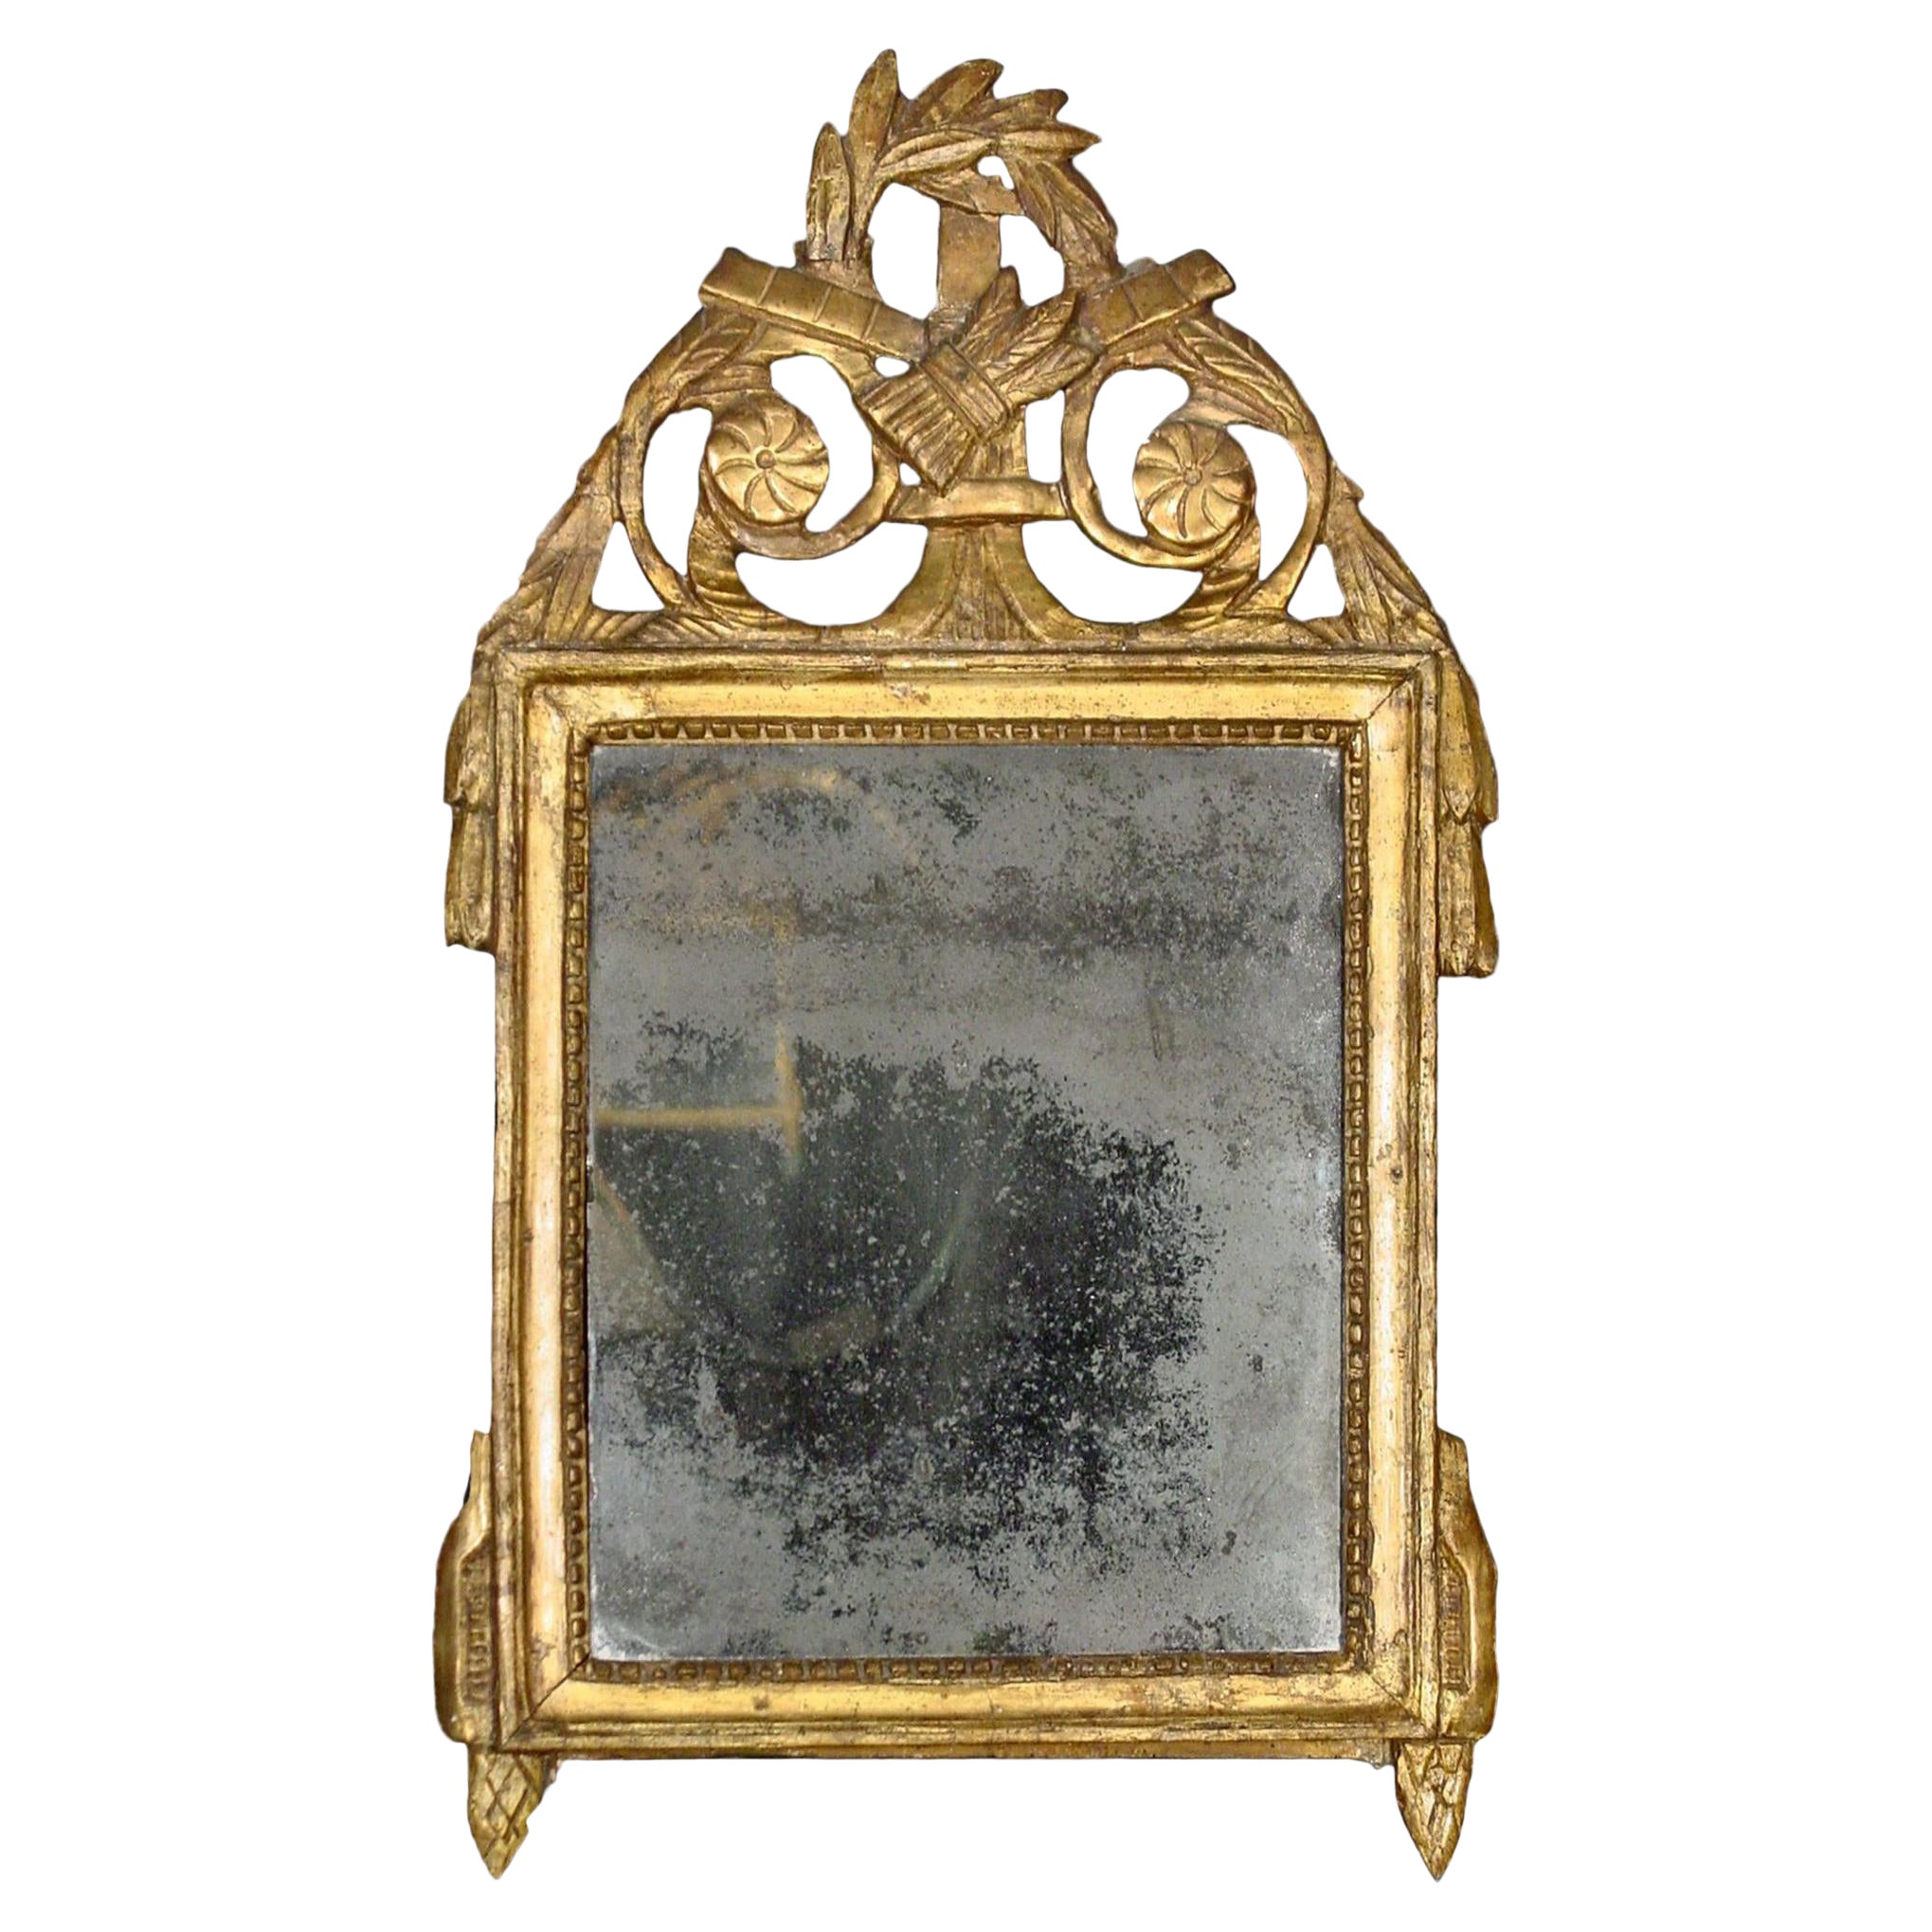 Patinierter grüner und vergoldeter Spiegel aus der Louis XVI-Periode des 18. Jahrhunderts